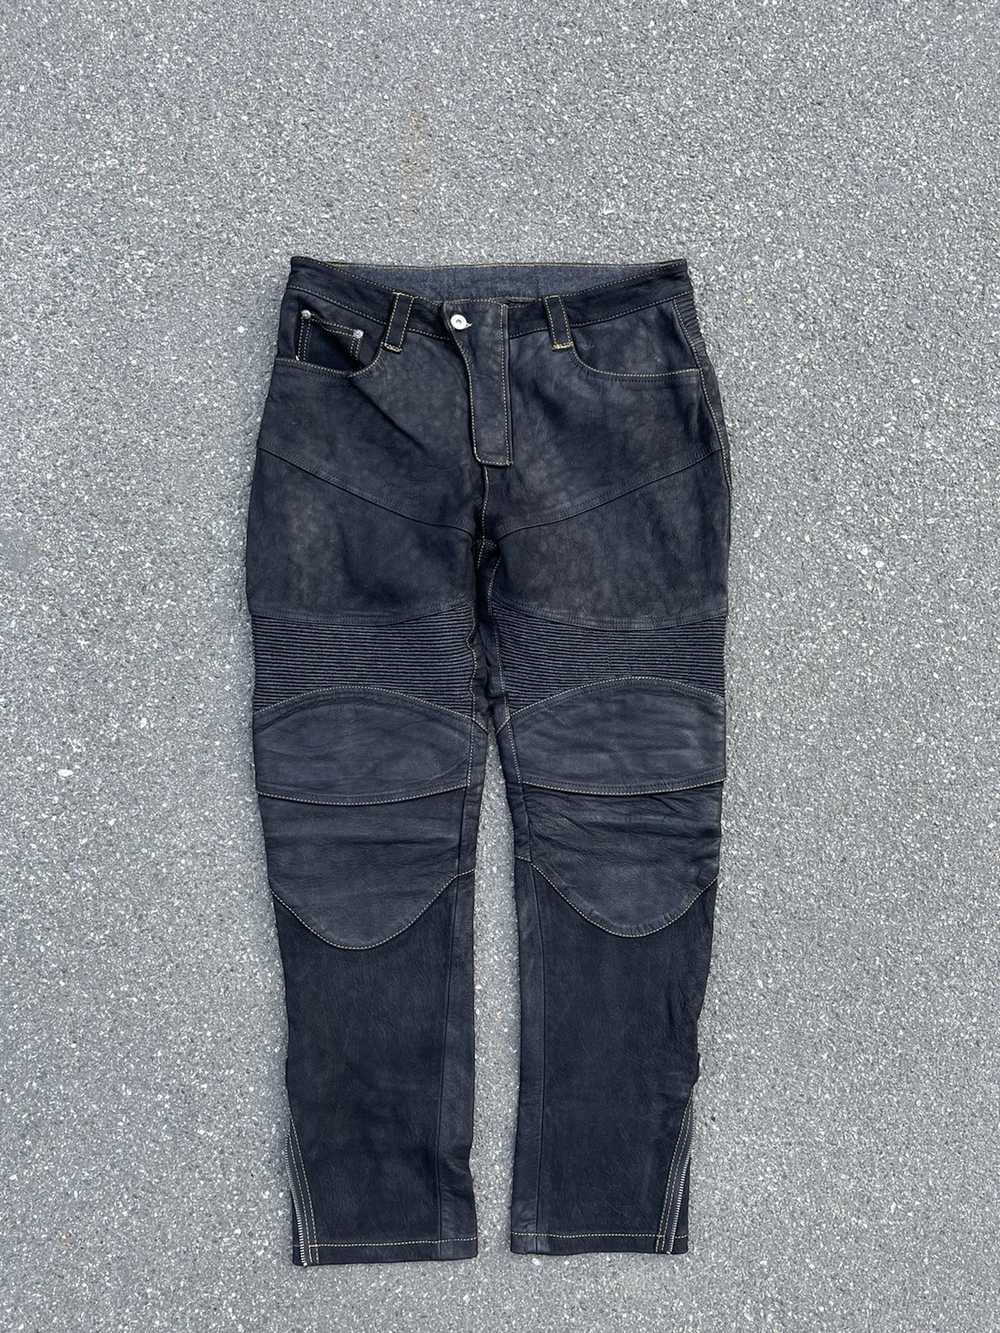 Biker Jeans × Genuine Leather × Vintage Vintage C… - image 6